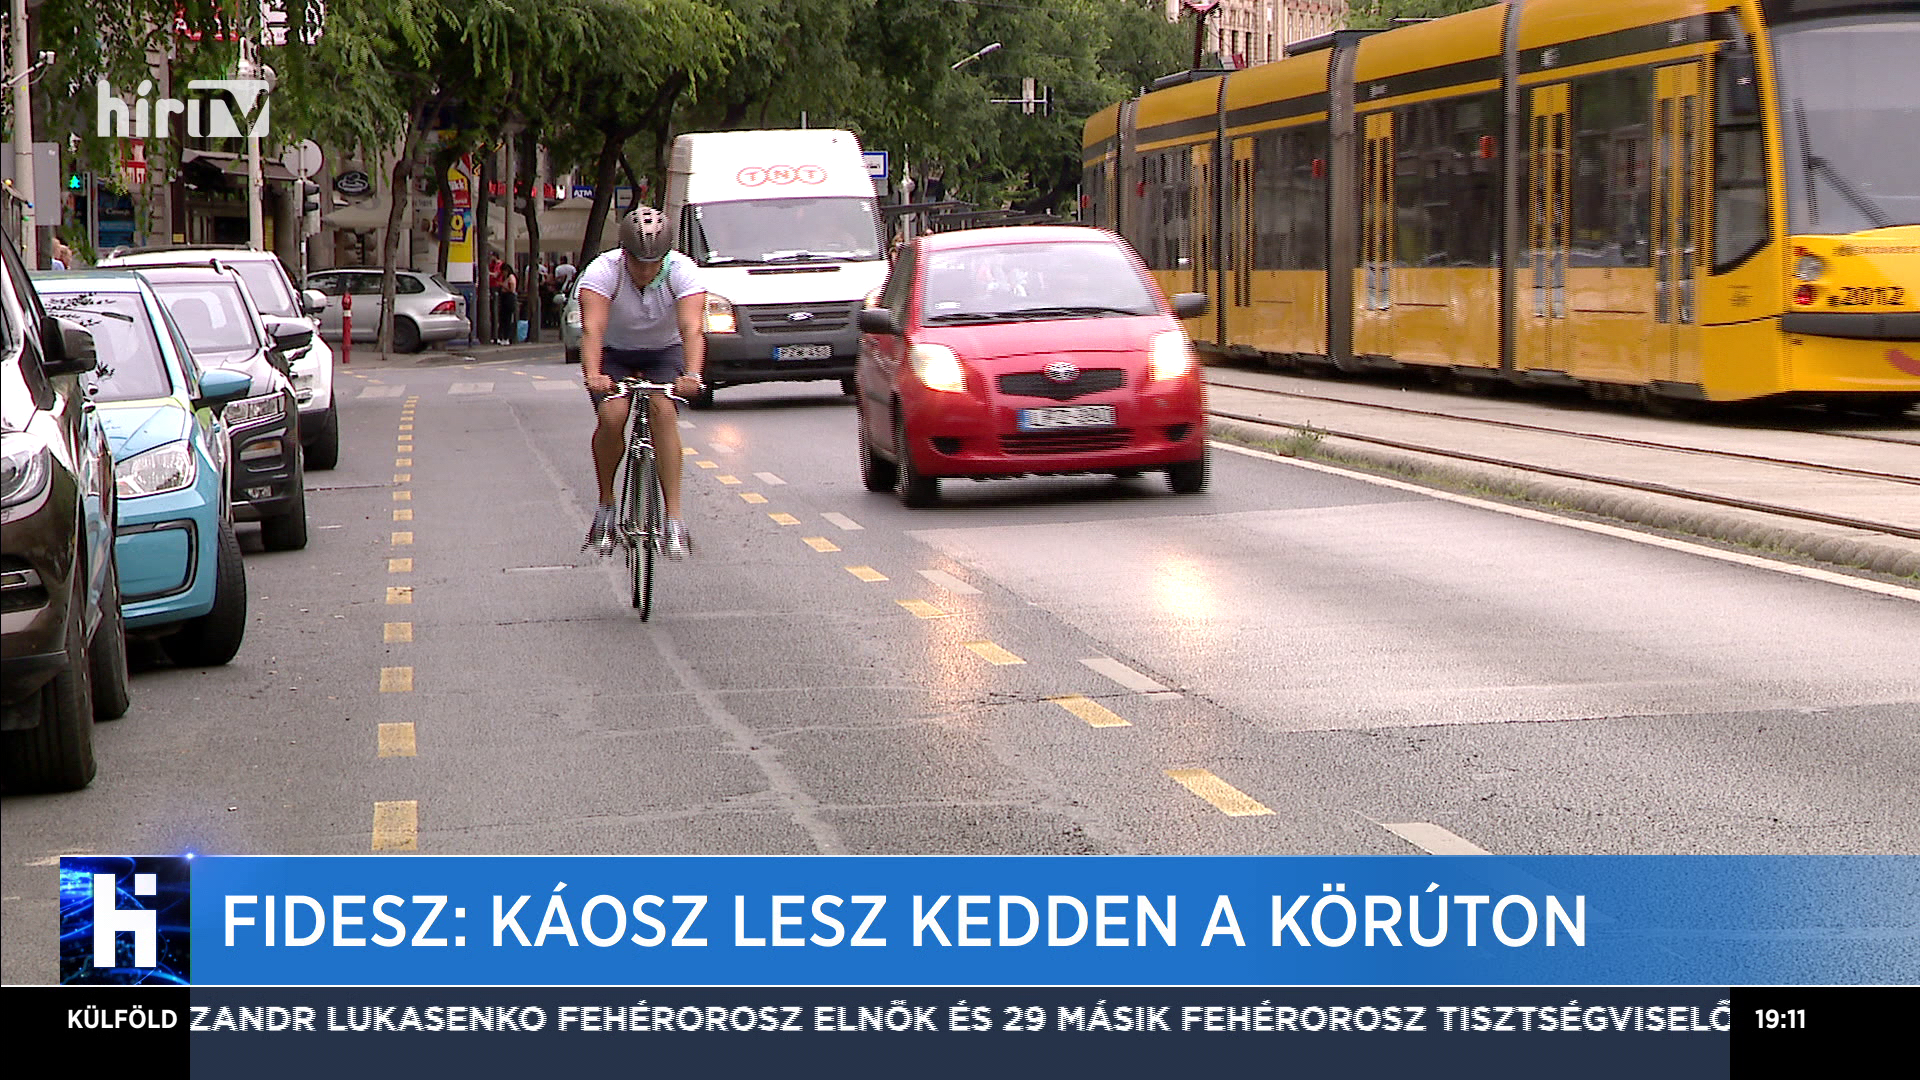 Fidesz: Káosz lesz kedden a körúton